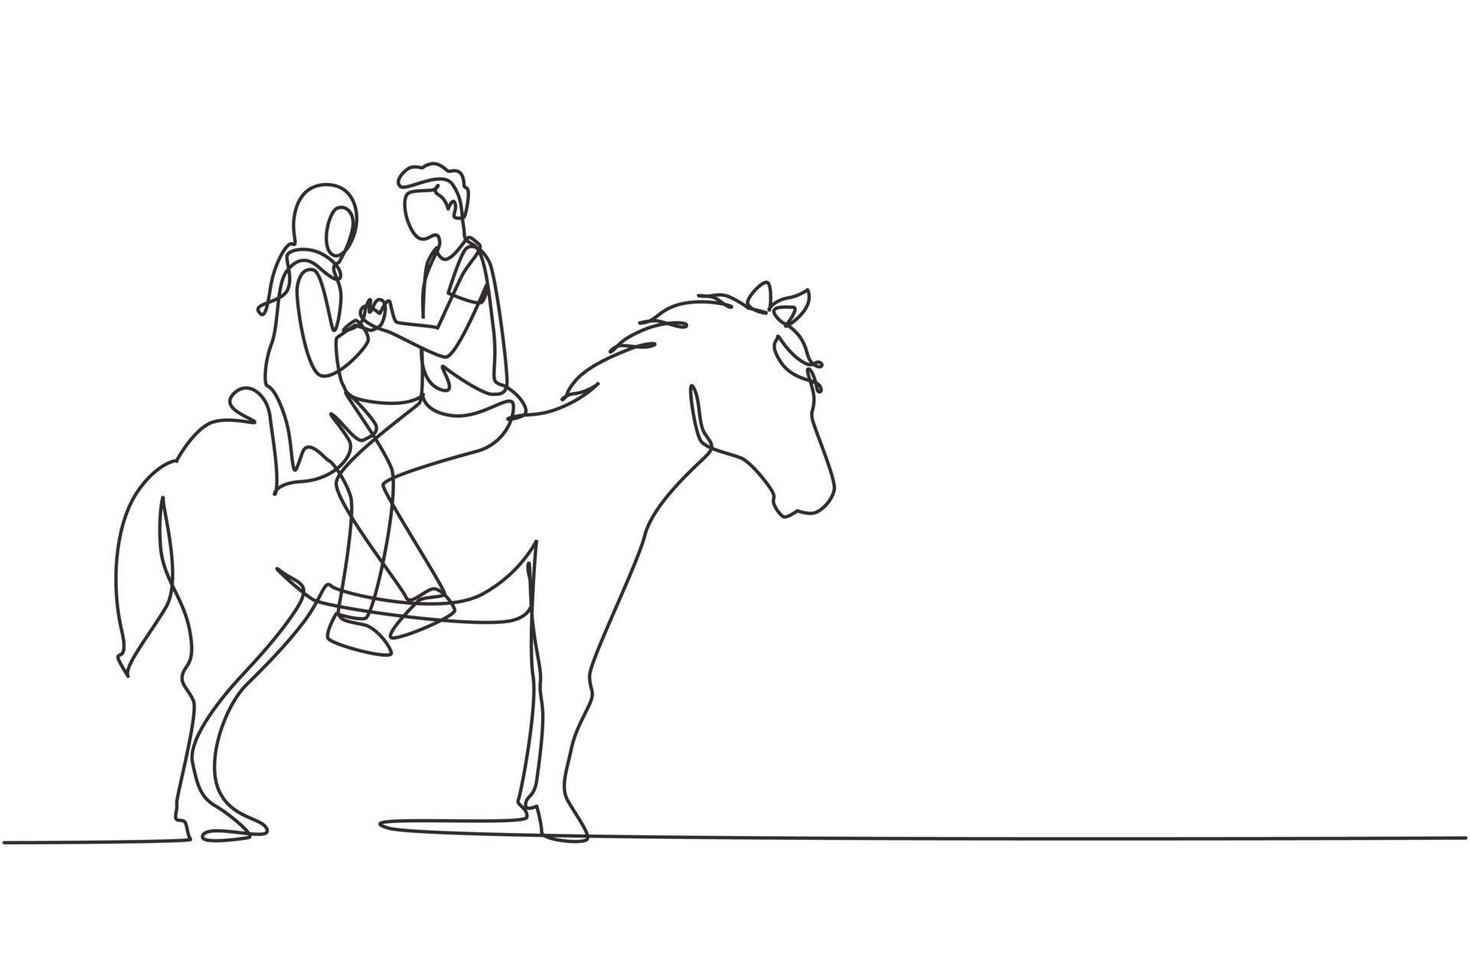 dibujo de una sola línea continua pareja árabe montando caballos cara a cara al atardecer. hombre feliz haciendo propuesta de matrimonio a mujer. compromiso y relación amorosa. vector de diseño gráfico de dibujo dinámico de una línea